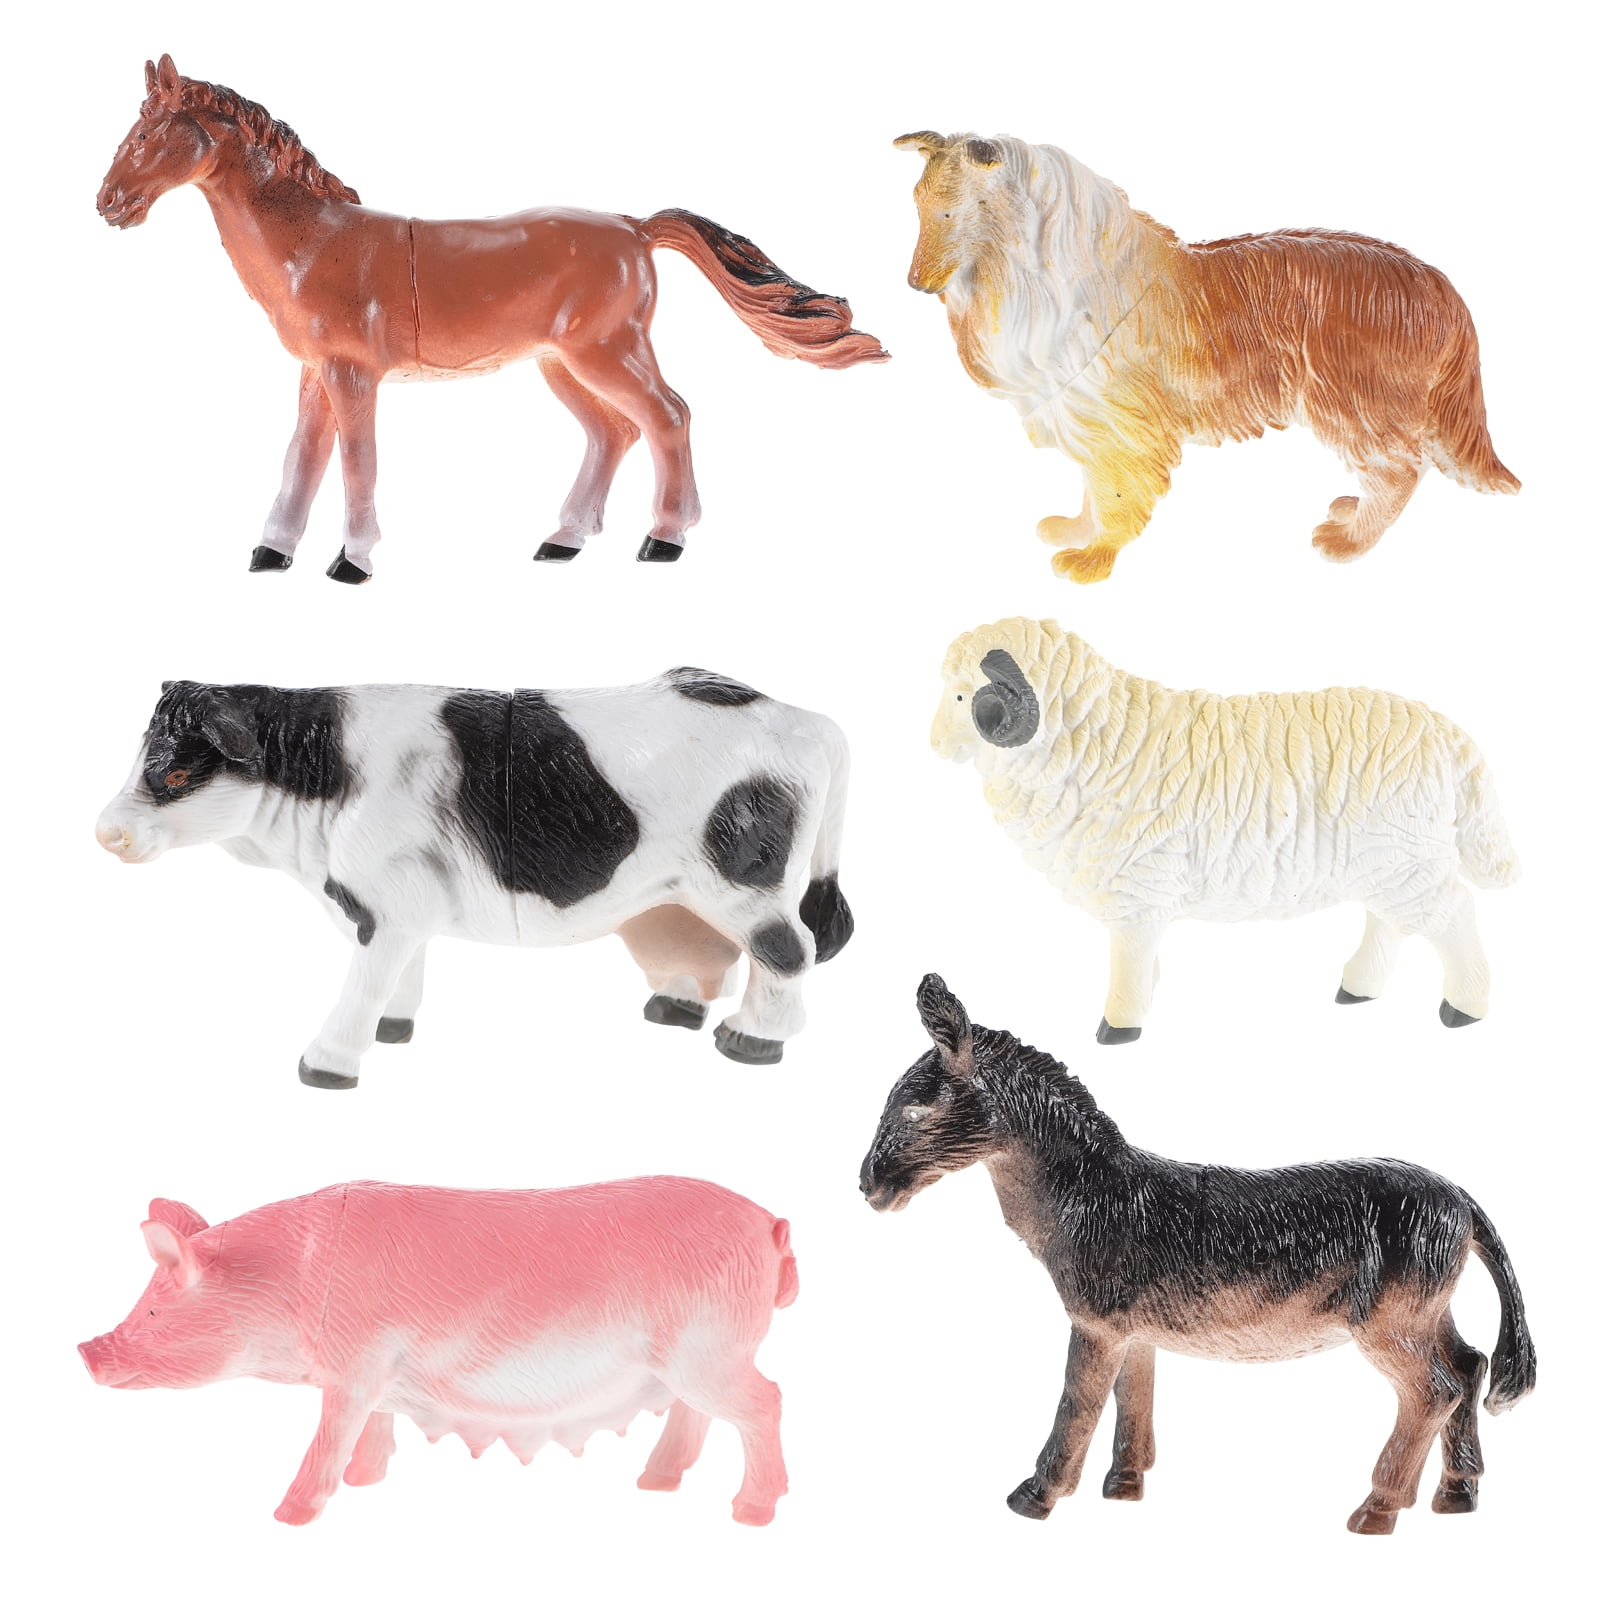 6pcs Model Farm Animal Figures Toy Pig Dog Cow Sheep Horse Donkey -  